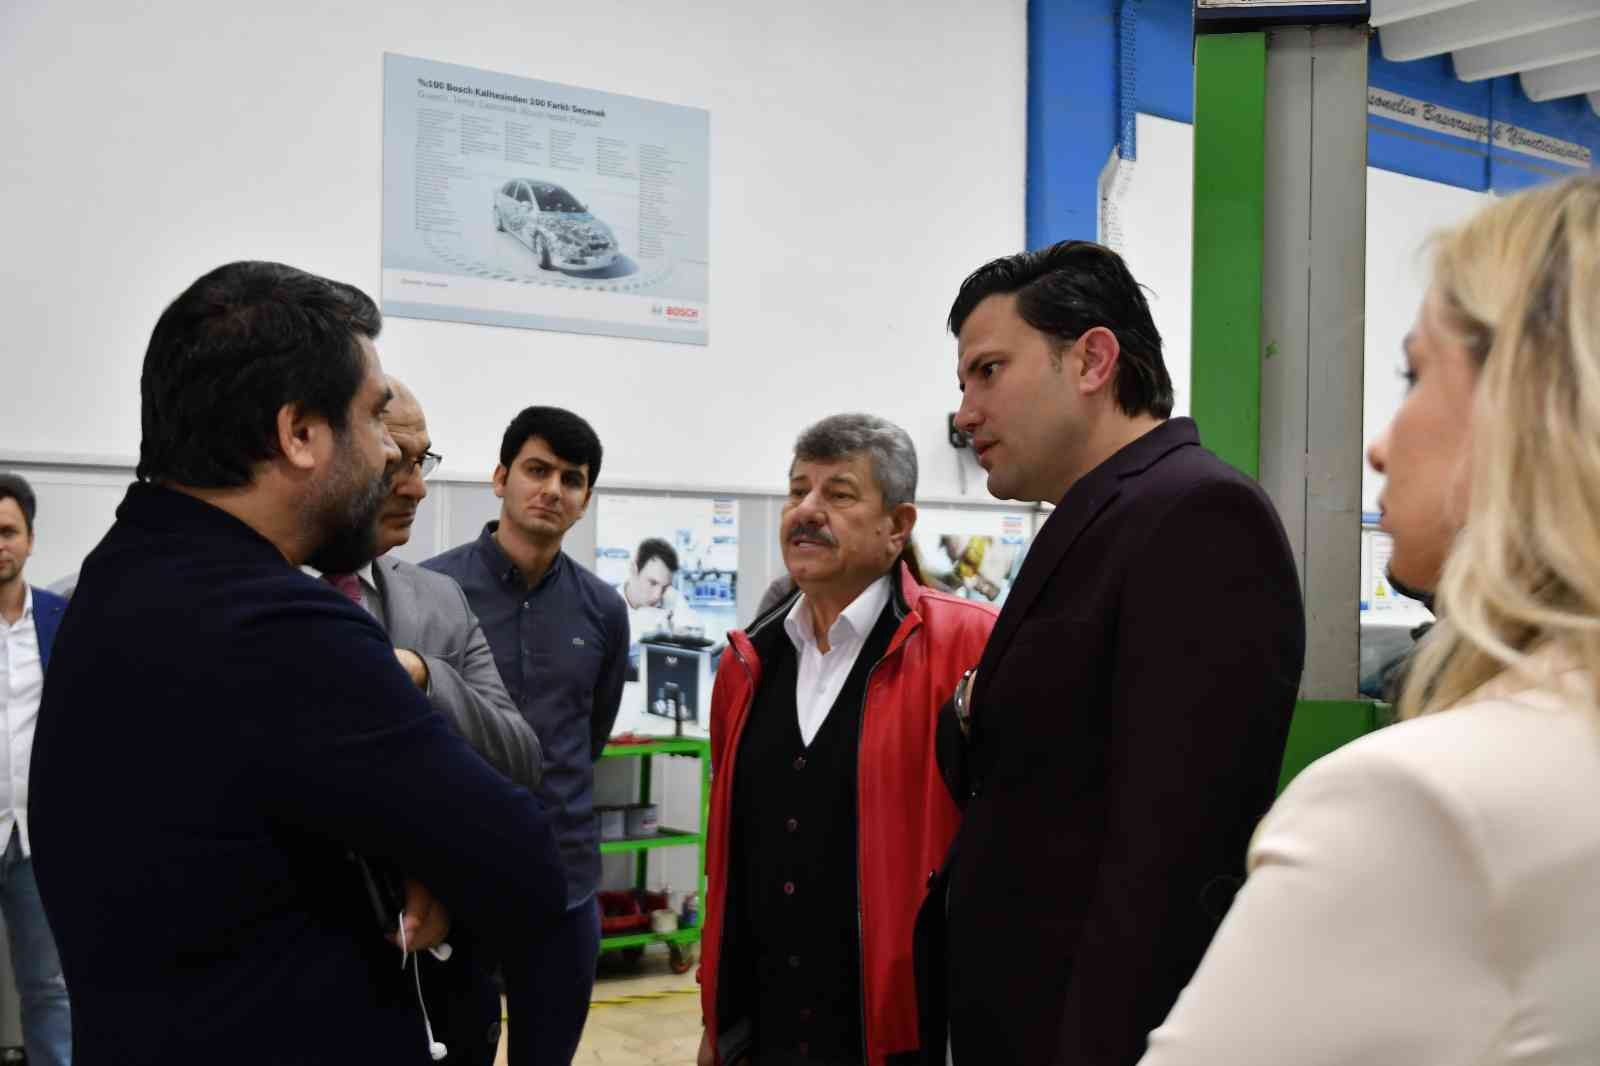 Otomobil dönüşüm sektörü için duayen kabul edilen Erbakan Malkoç, Bursa’da gençlerle ve iş dünyasıyla buluştu. Verdiği bilgilerle gençler ...